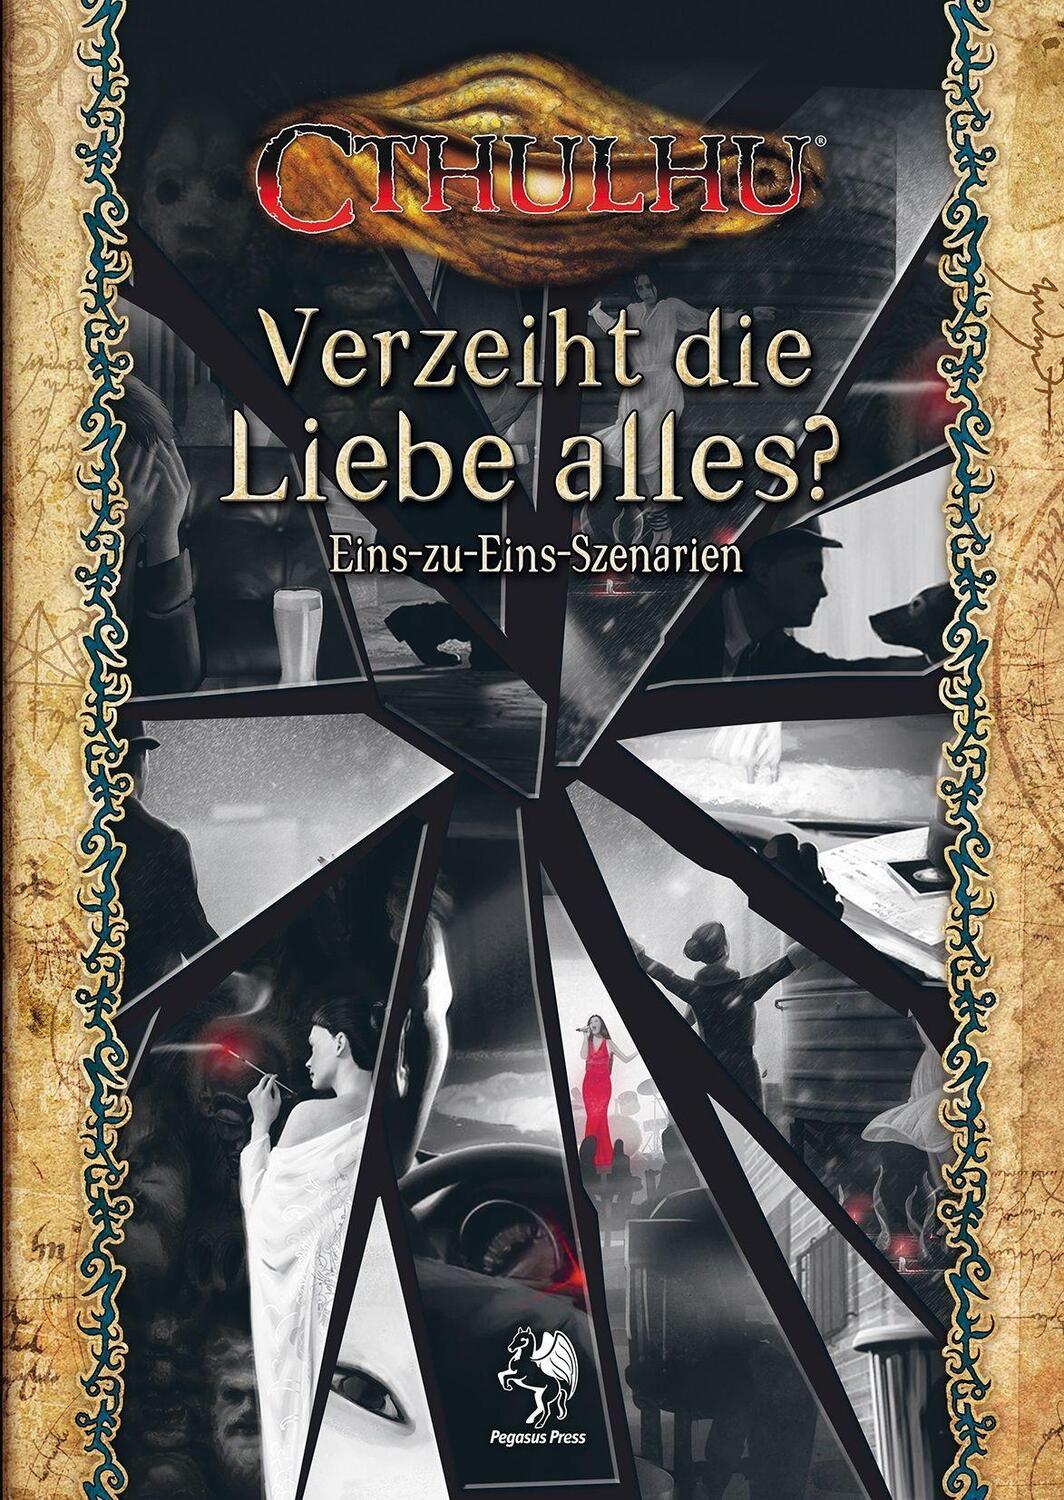 Bild: 9783969280485 | Cthulhu: Verzeiht die Liebe alles? (Softcover) | Taschenbuch | Deutsch